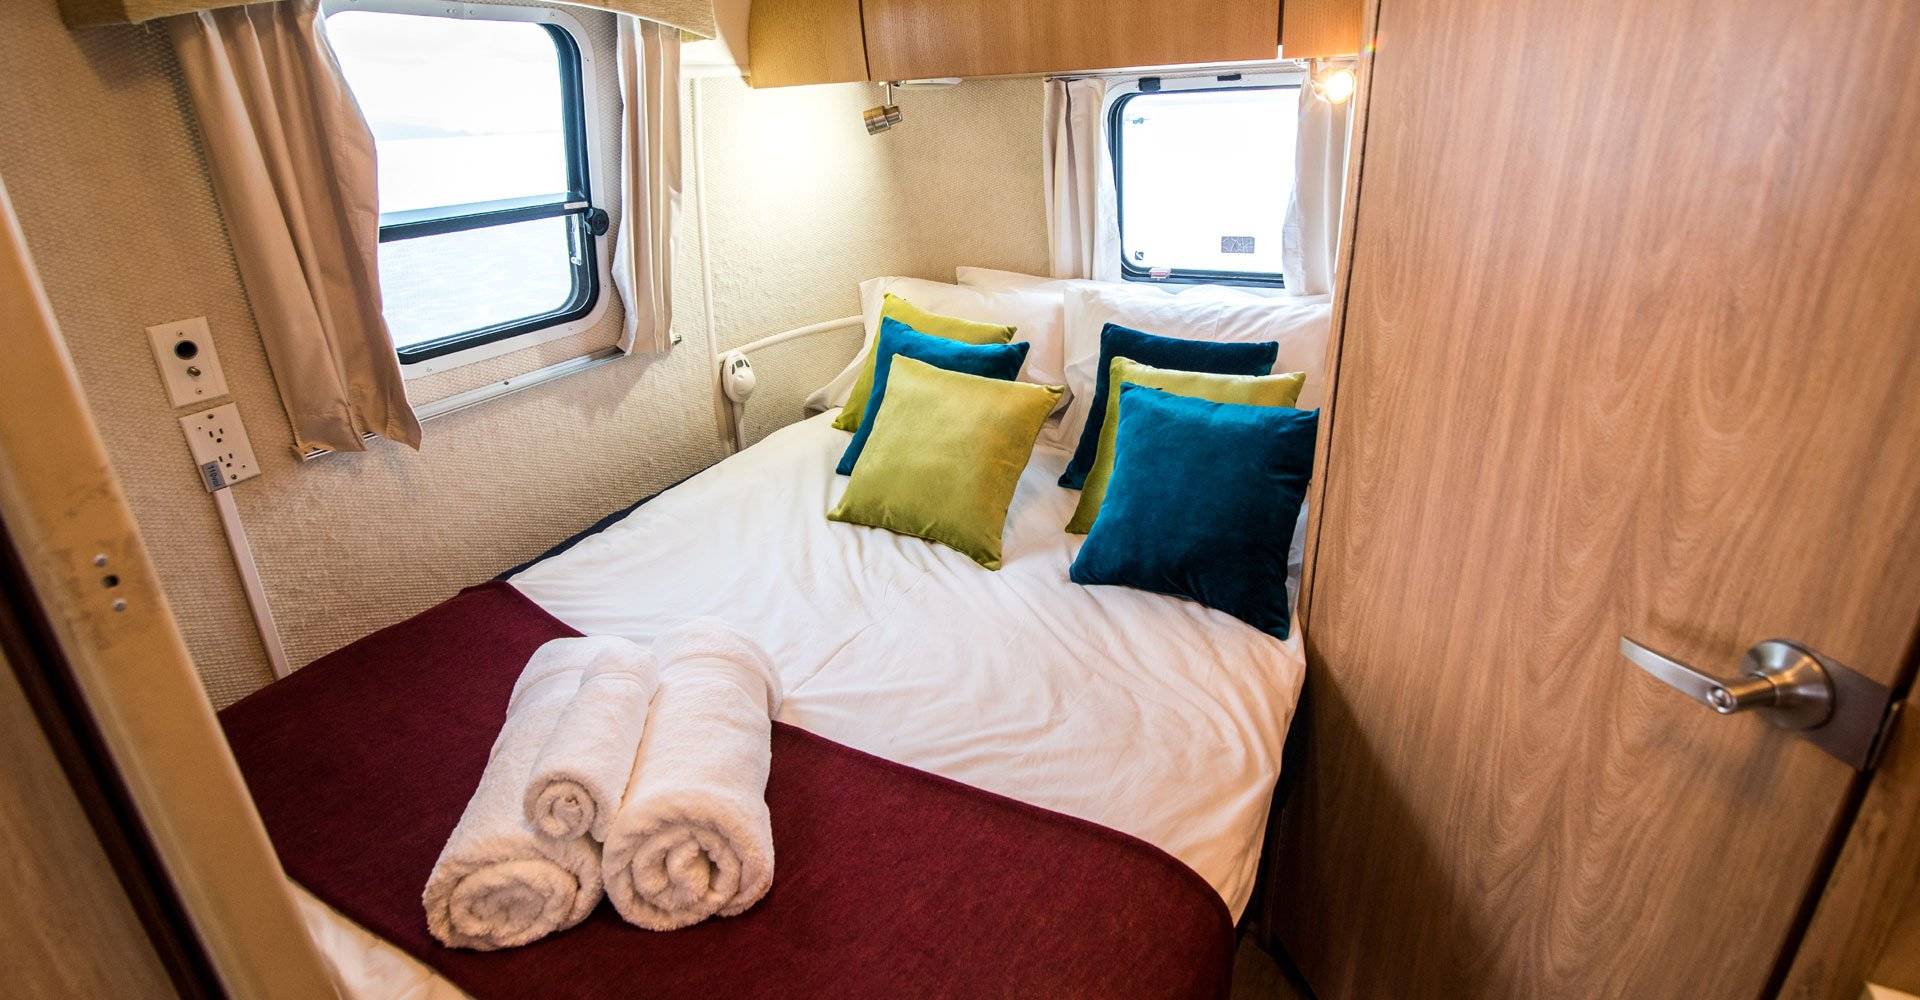 Bolivien, Uyuni Airstream-Camper, Camper Kabine, Latin America Tours